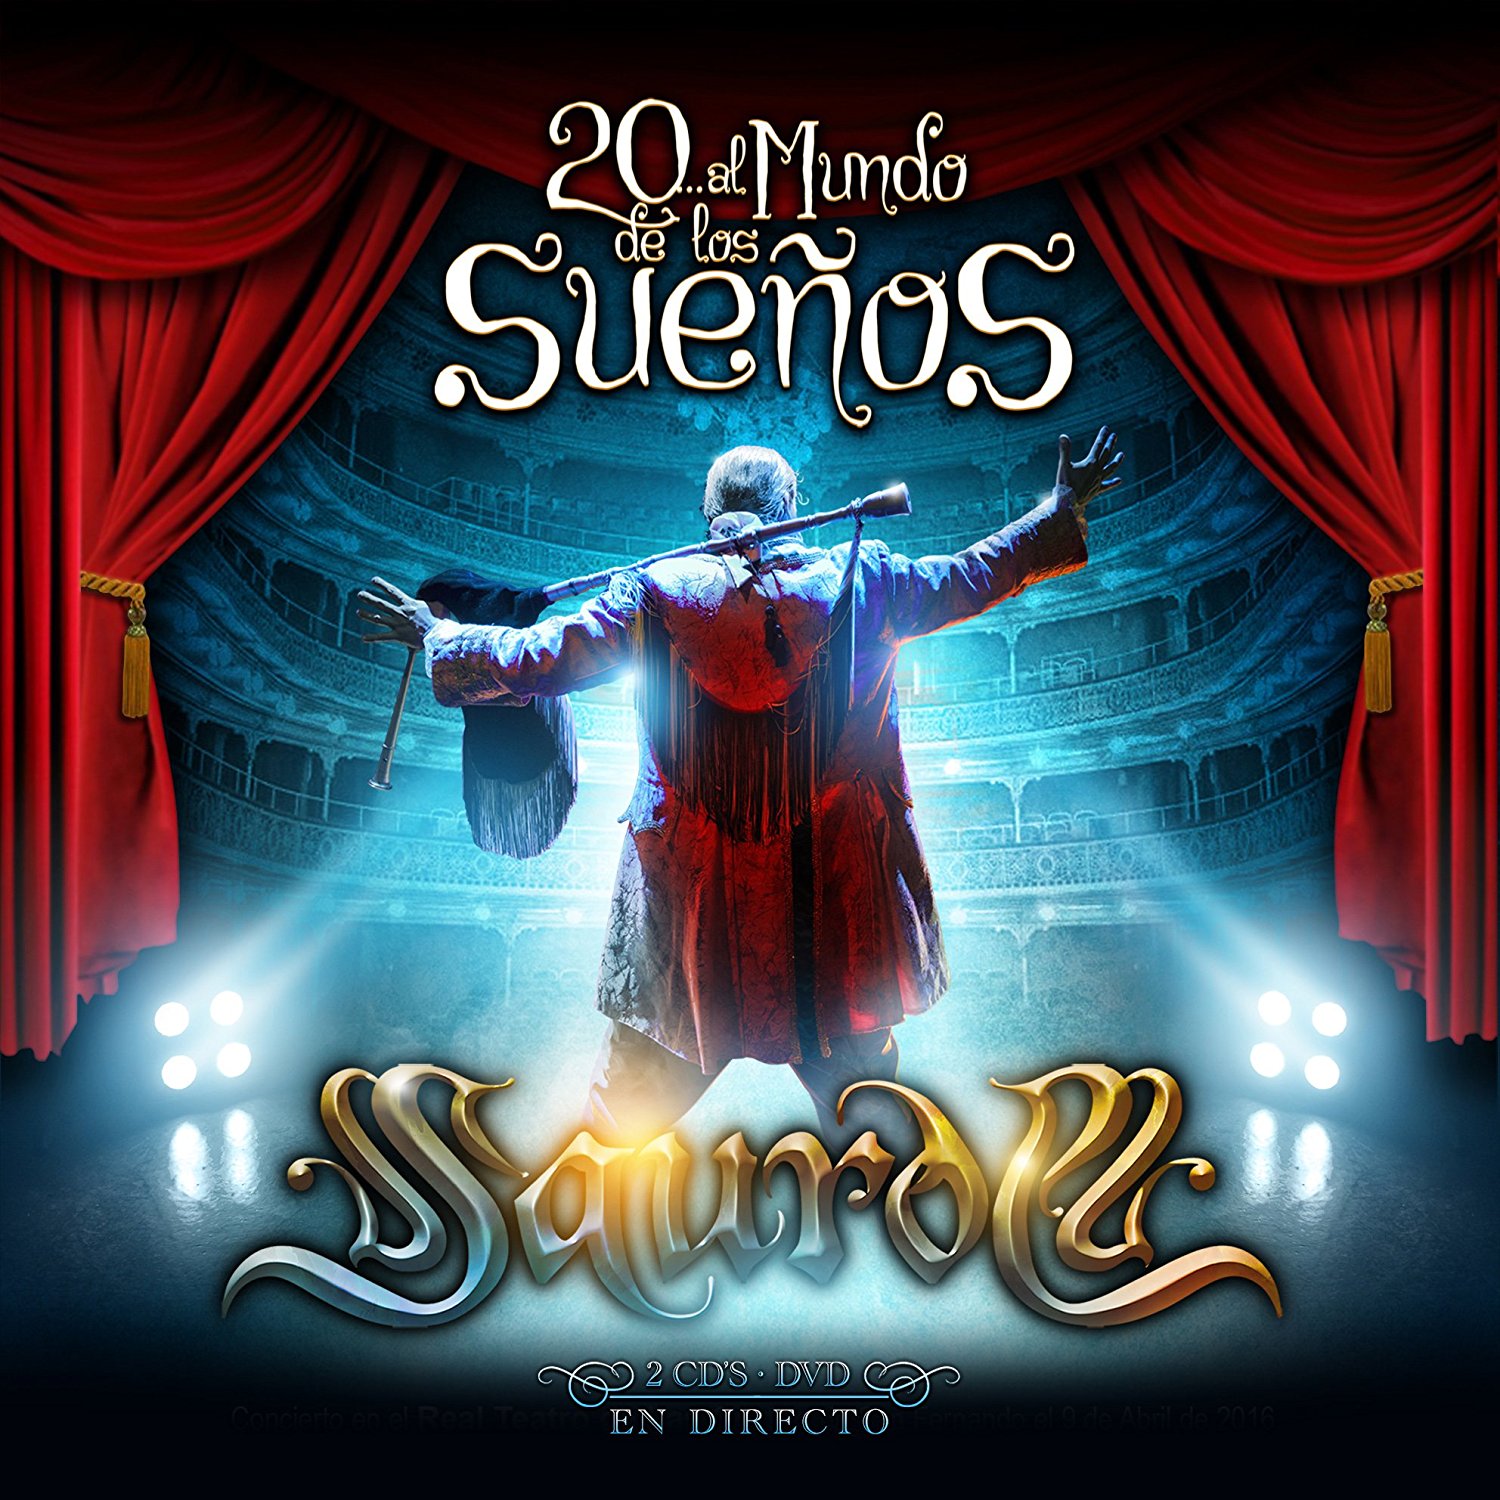 20 AL MUNDO DE LOS SUEÑOS -2CD + DVD-